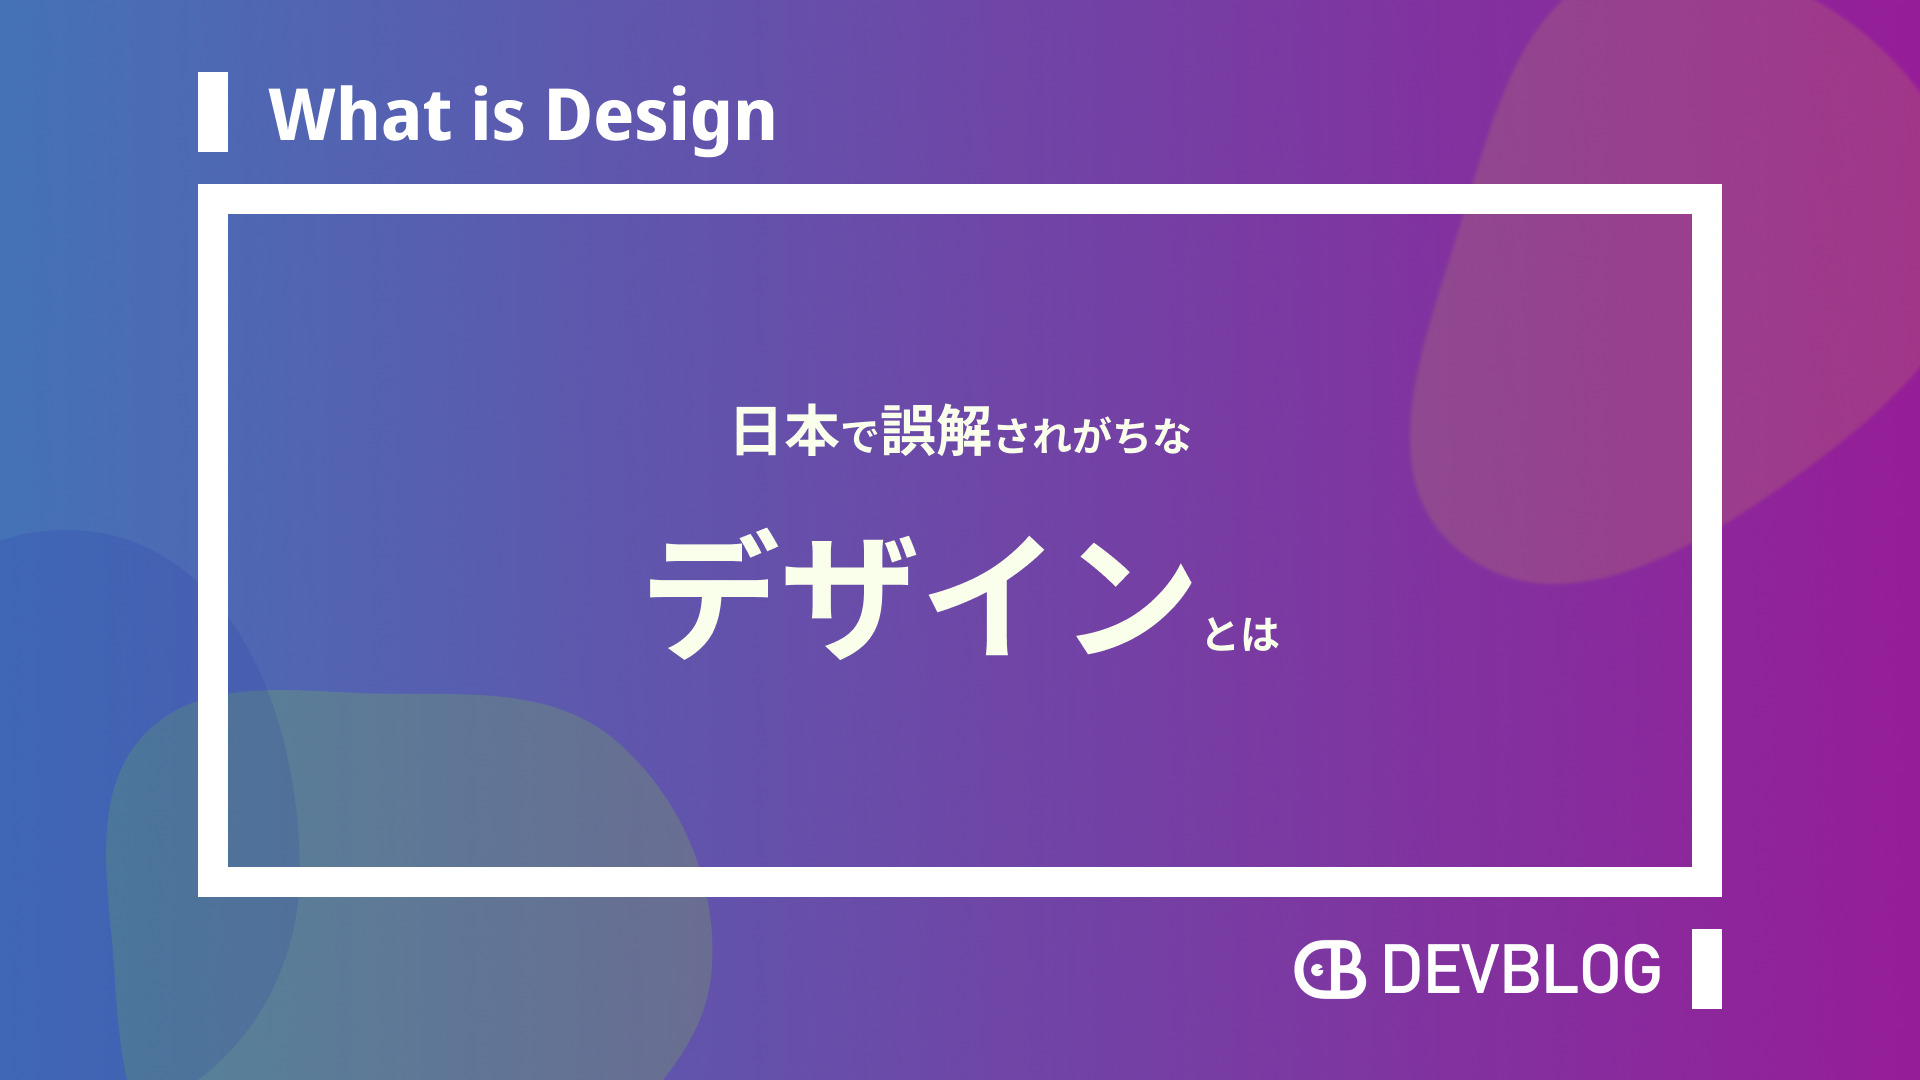 あなたは大丈夫 デザイナーじゃない人でも把握すべきデザインの意味とは Devblog